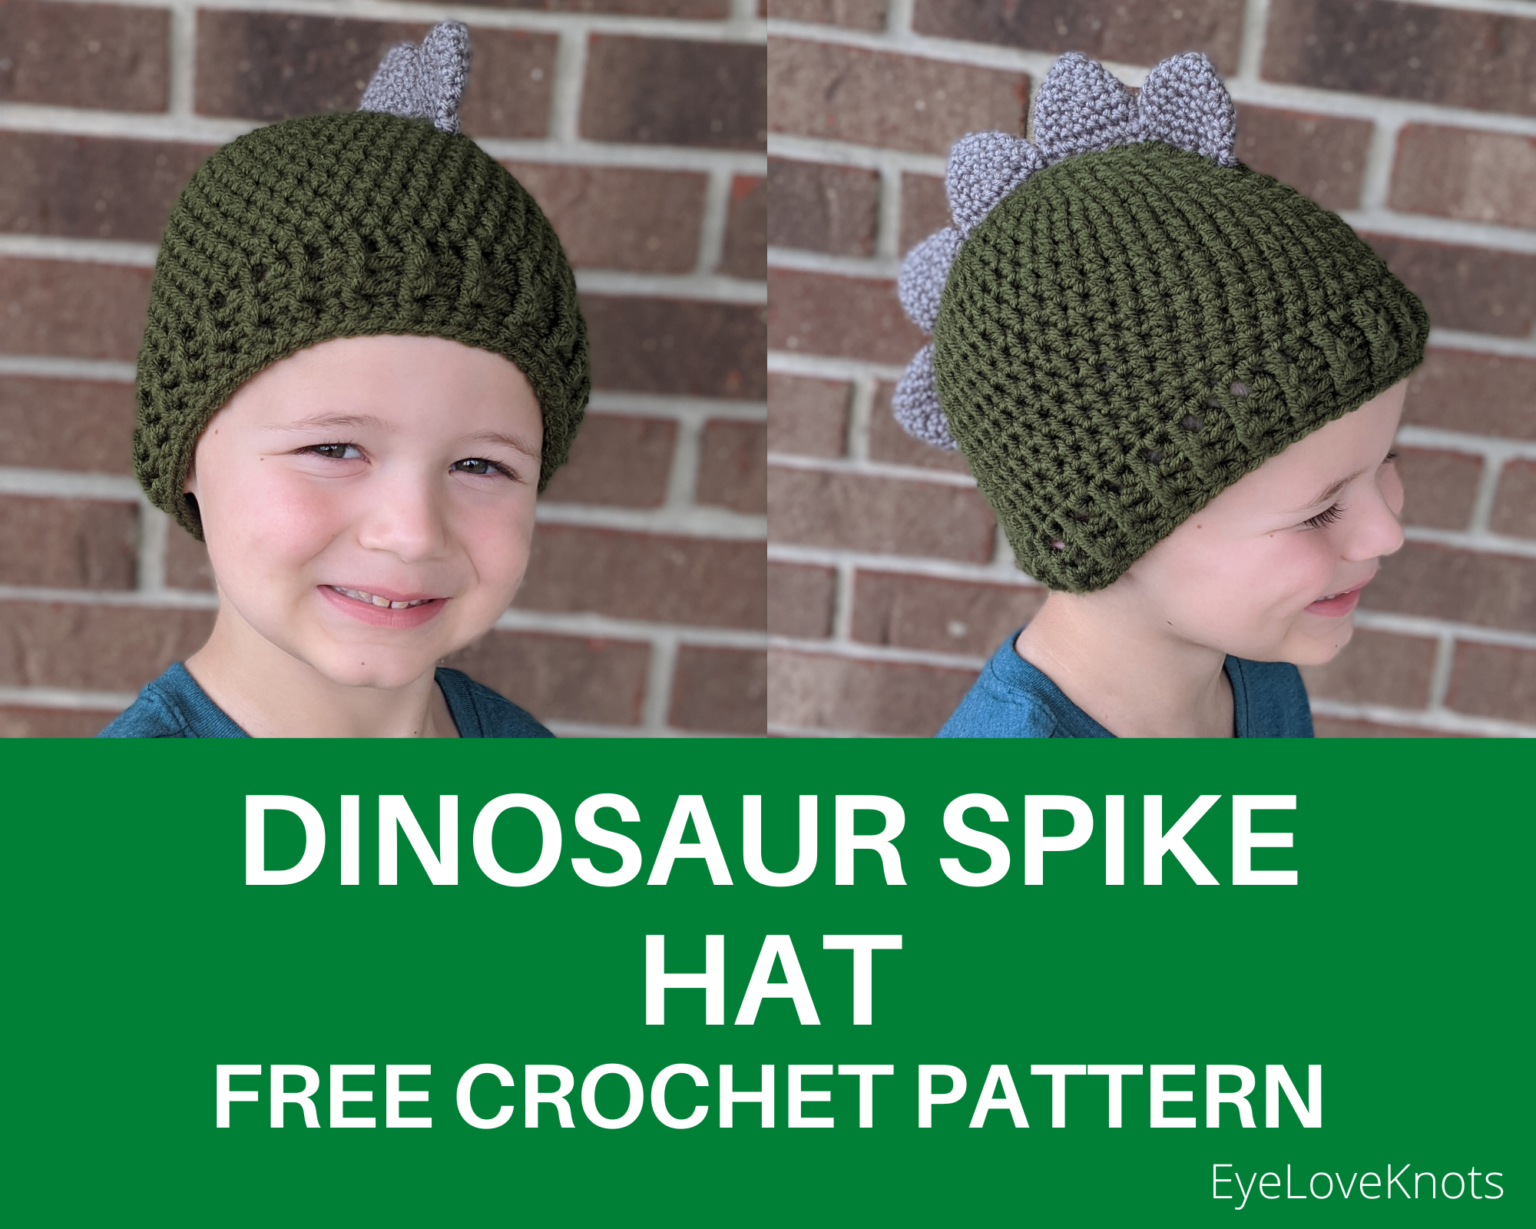 Double Knotted Crochet's Dinosaur Spike Hat - Free Crochet Pattern ...